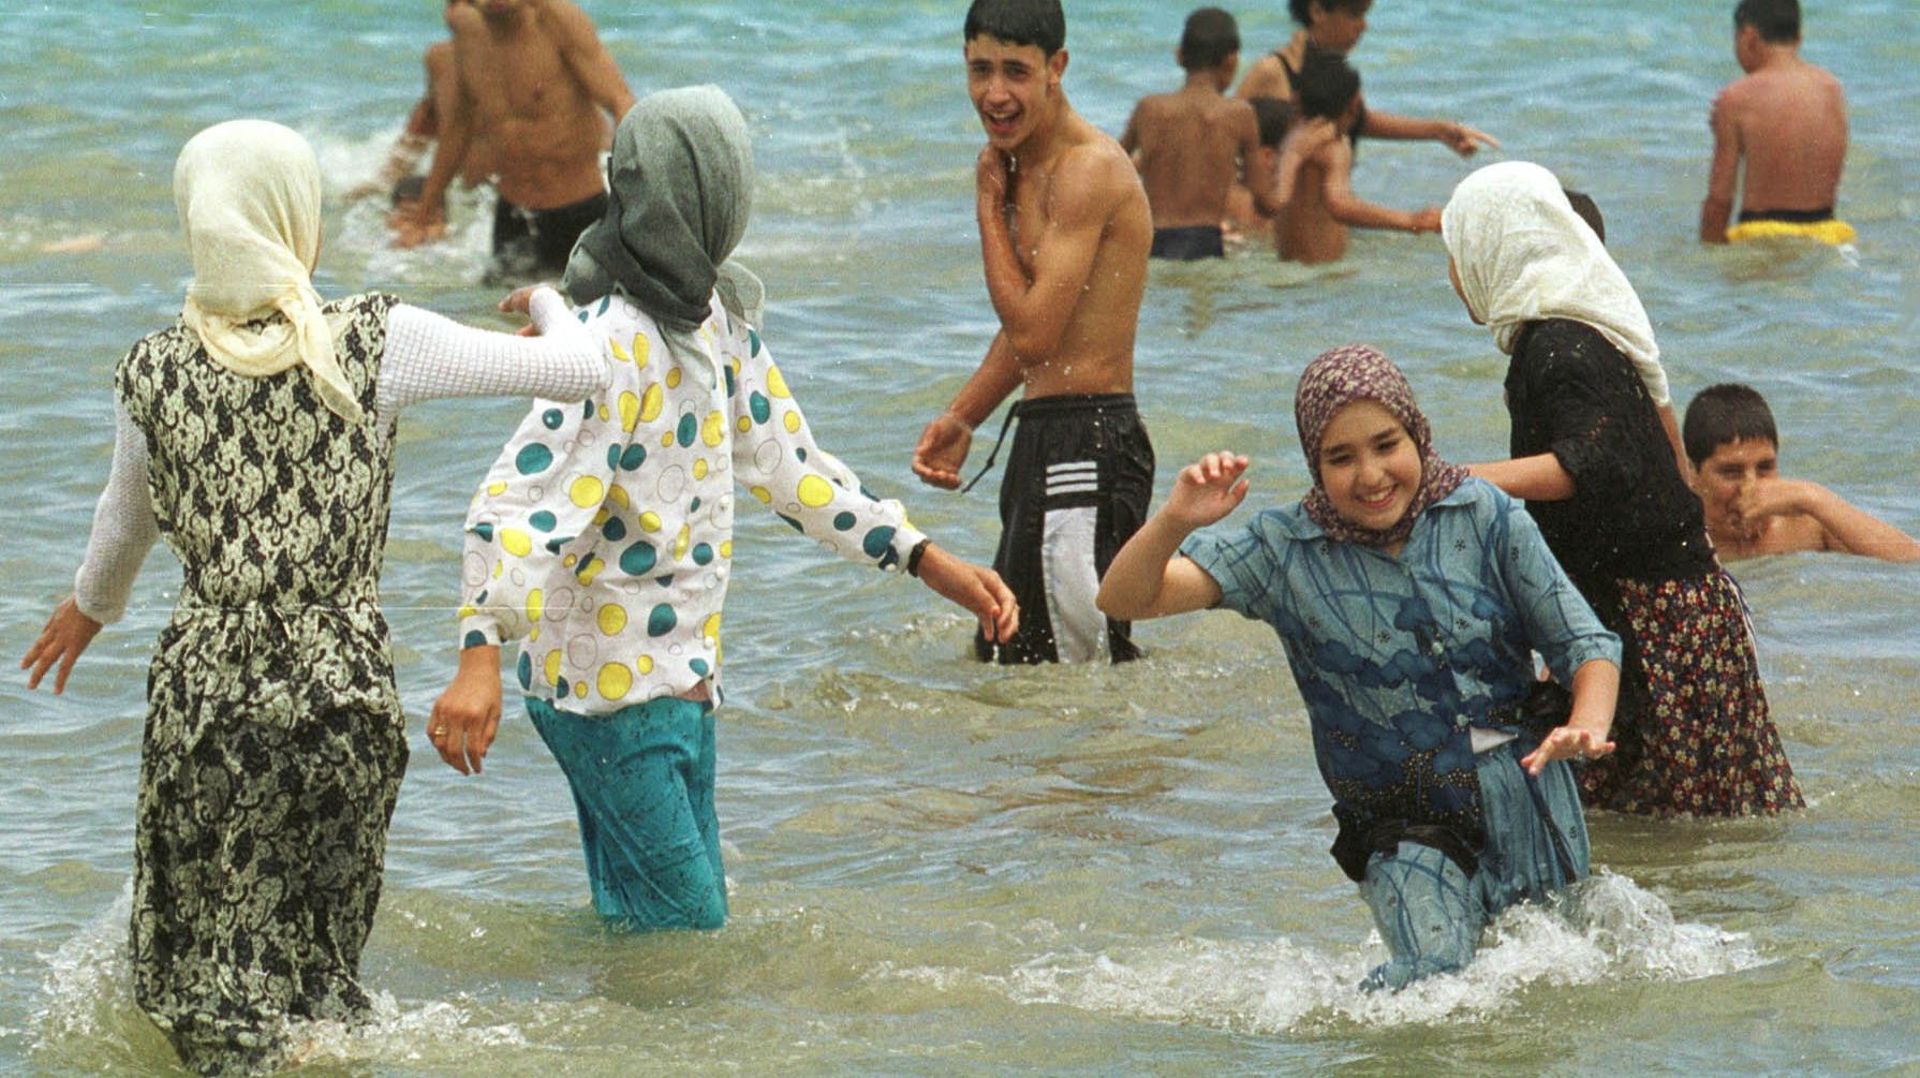 En 2000 déjà,des jeunes filles voilées plaisantent avec des jeunes hommes en maillot de bain, le 23 juillet 2000 sur la plage de Tanger. Obligés par les autorités marocaines de quitter leurs campings, les militants d'Al Adl Oualihsane (Justice et bienfais